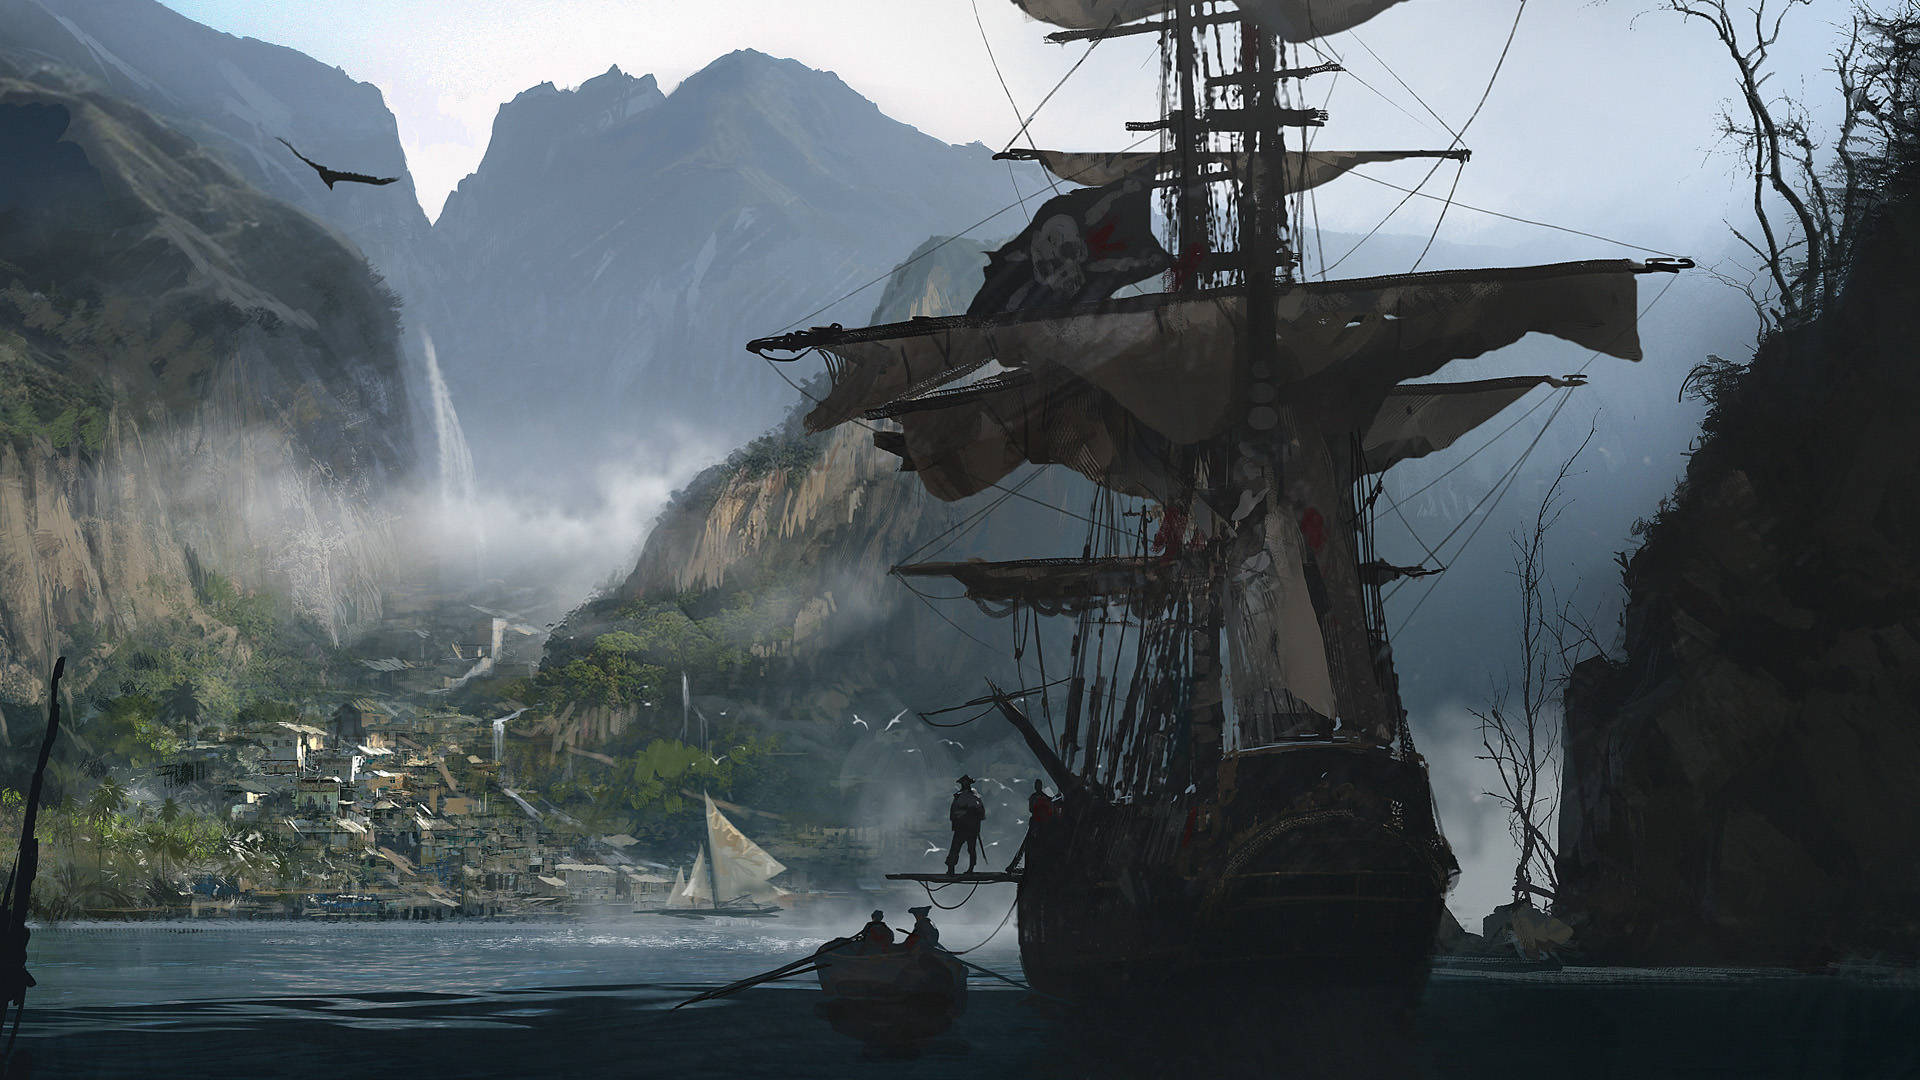 Assassin's Creed Black Flag Old Sailing Ship Wallpaper